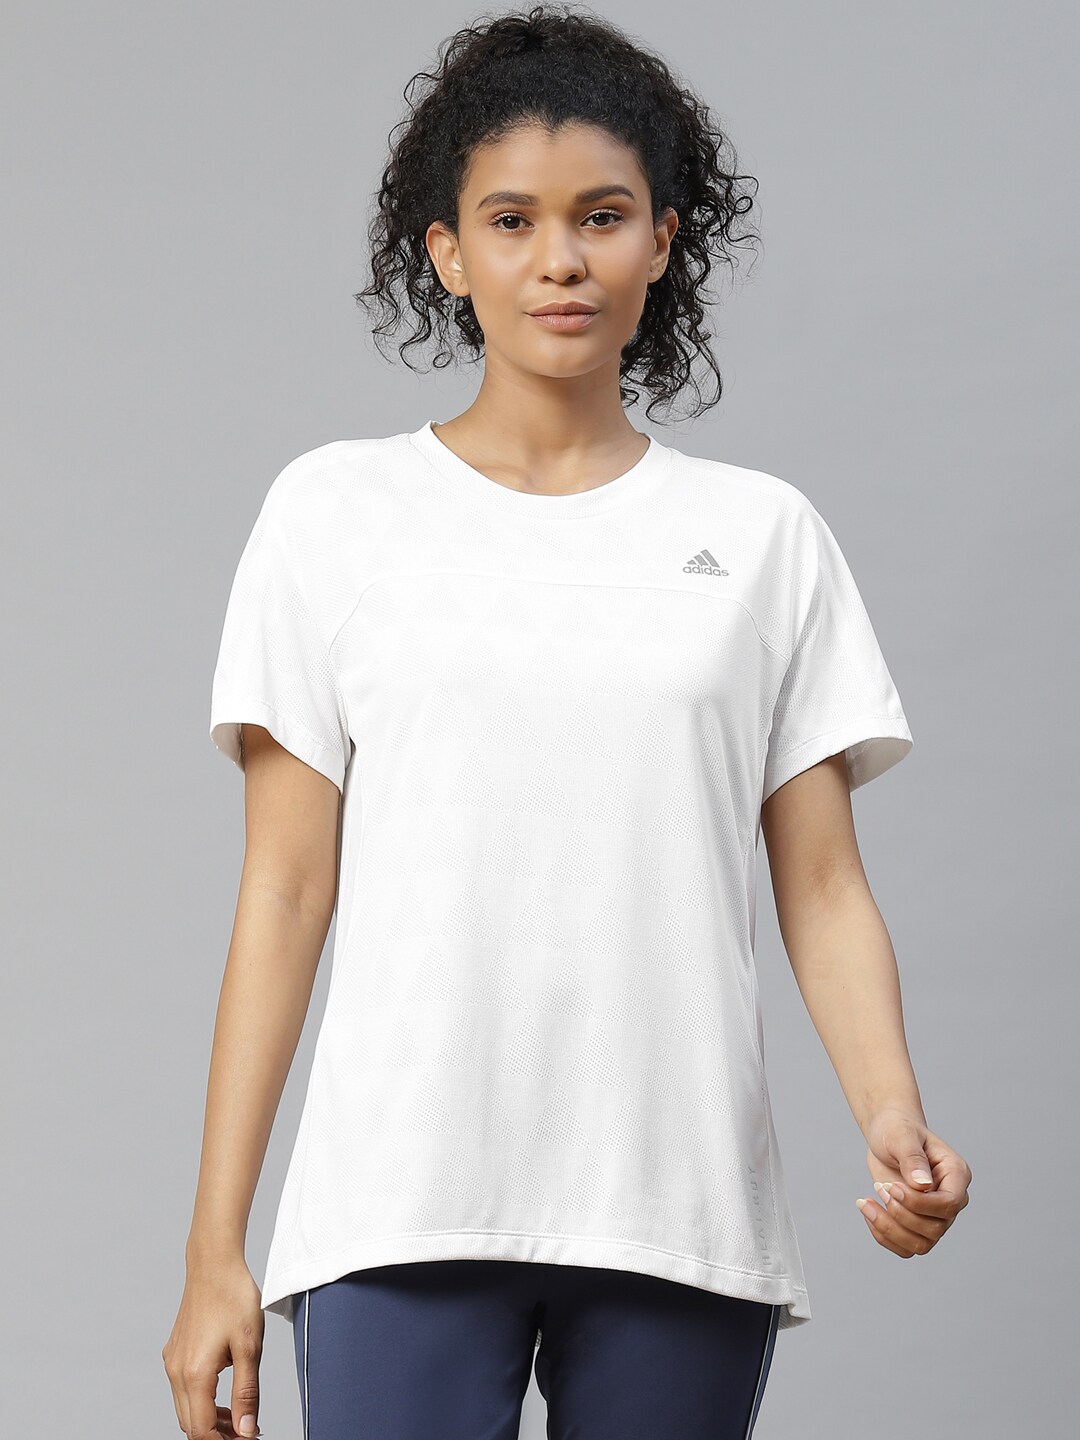 ADIDAS Women White Heat Ready Running T-Shirt Price in India